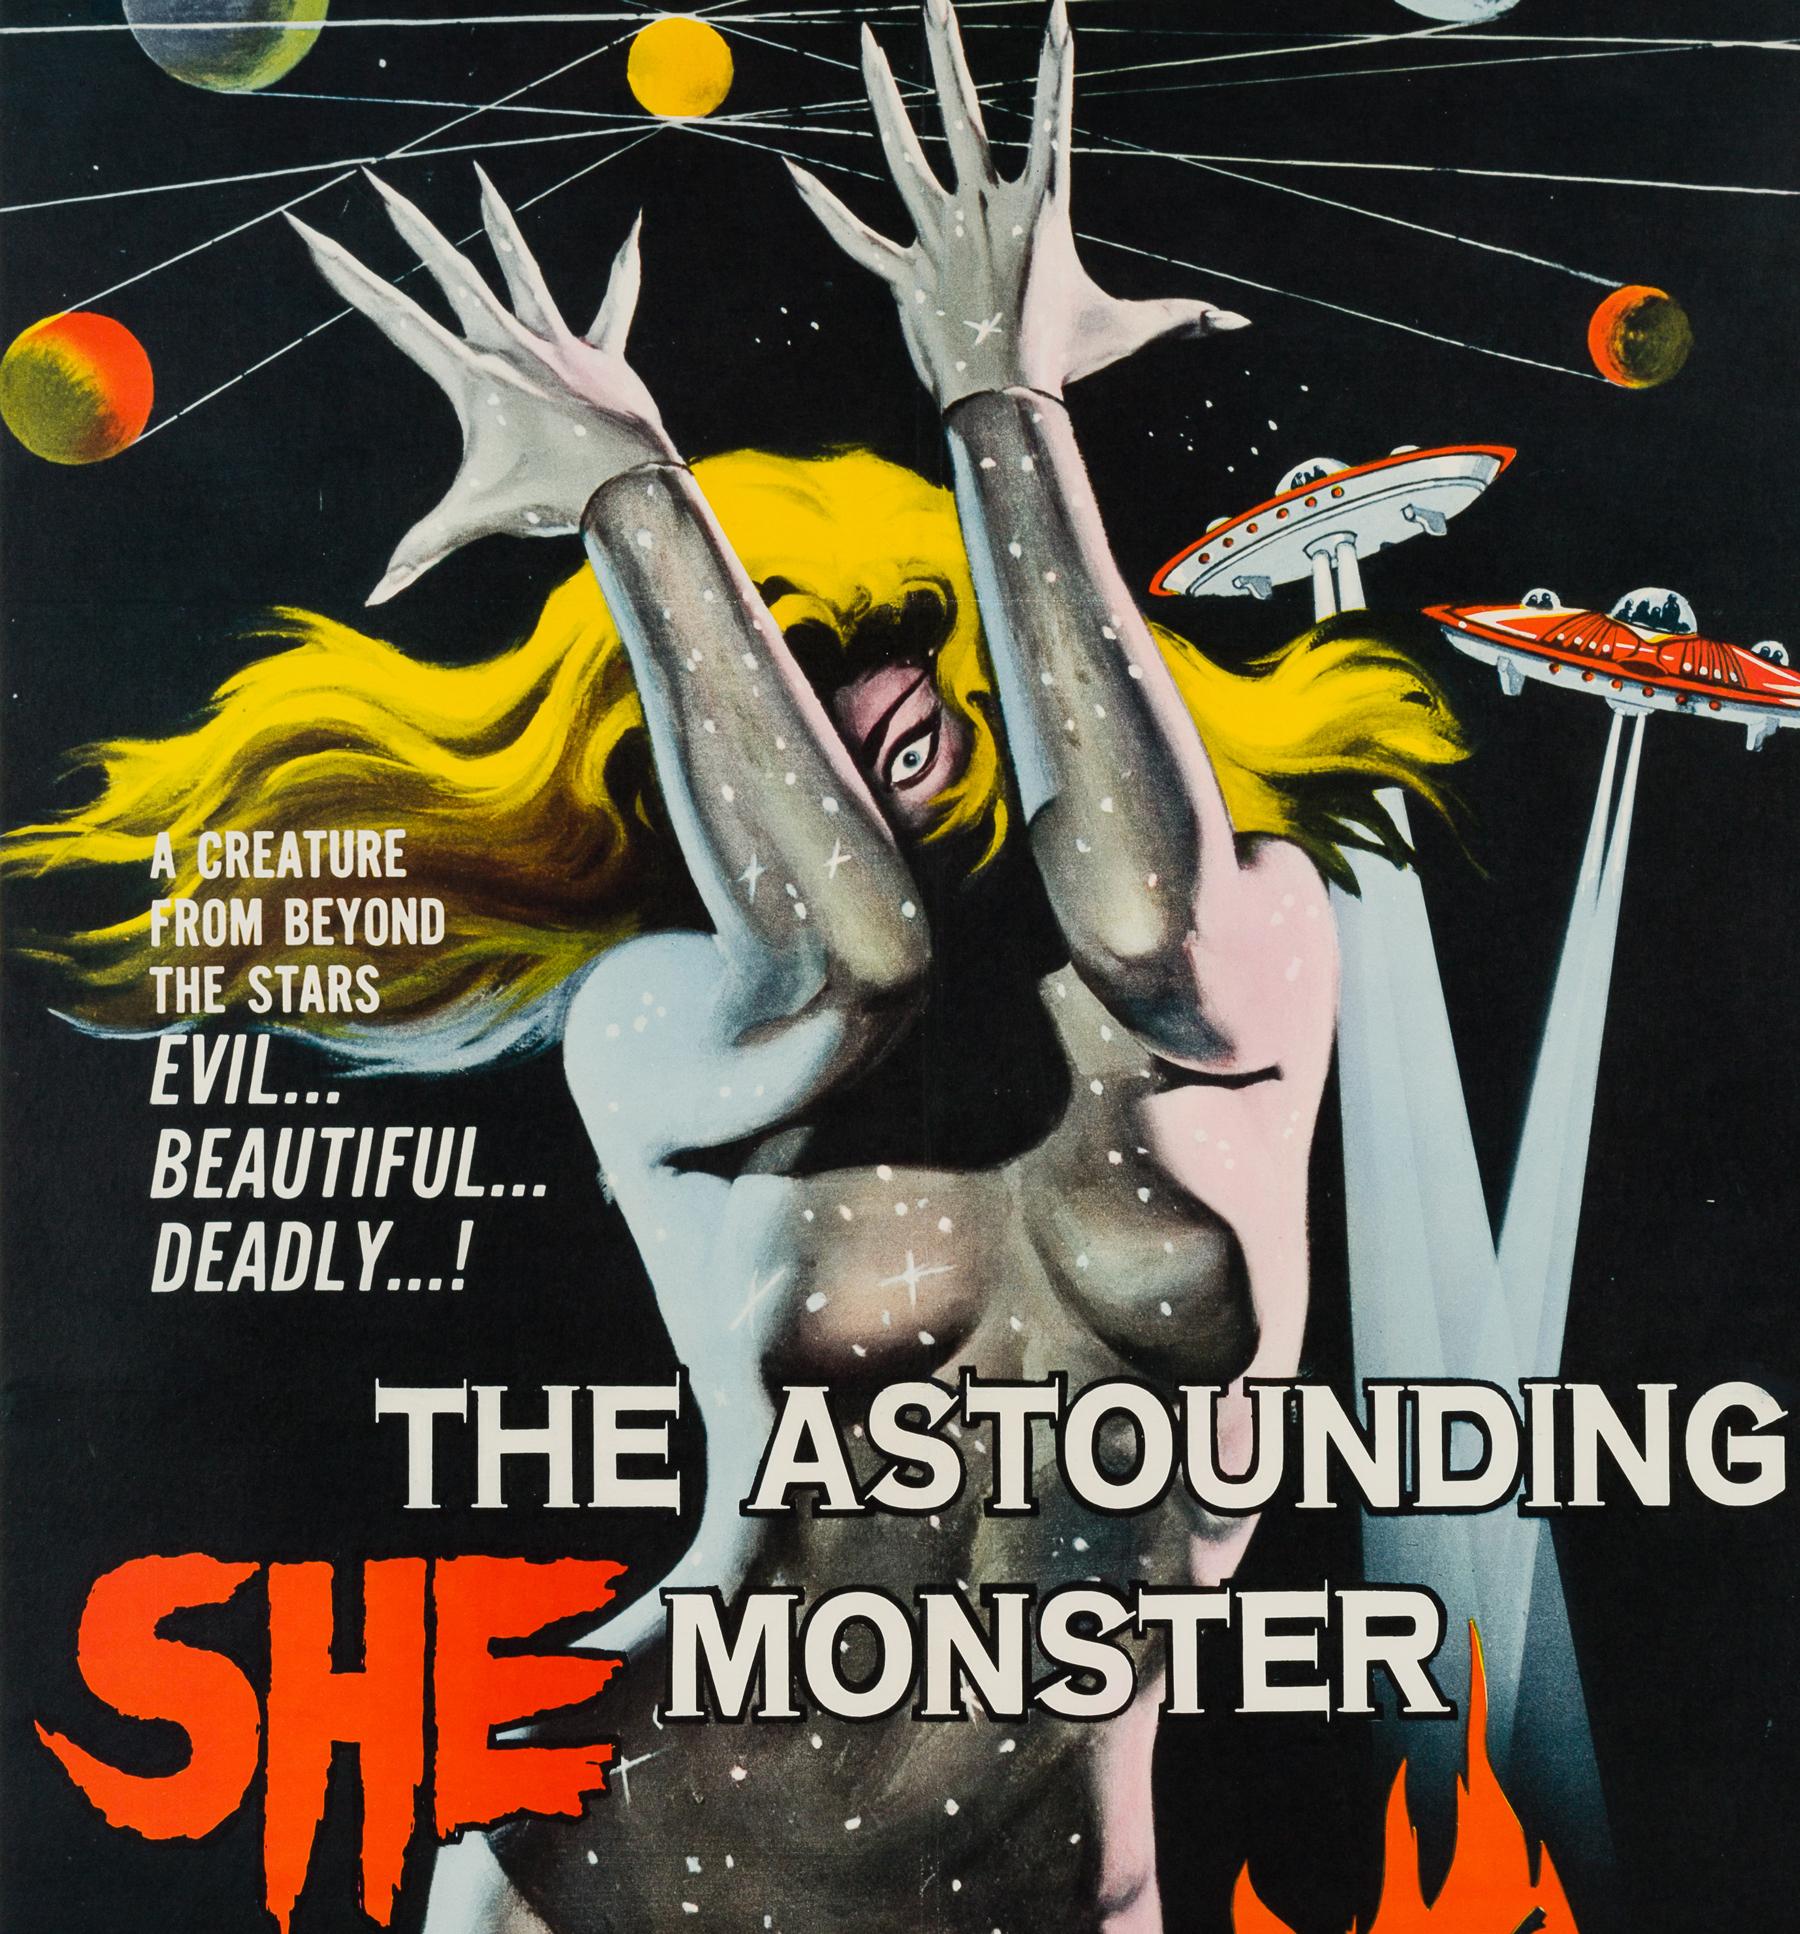 The Astounding She Monster, ein Kultklassiker aus dem Schocktheater der 1950er Jahre. Verdientermaßen eines der begehrtesten Filmplakate mit fantastischen kosmischen und verführerischen Motiven des legendären American International Pictures (AIP)